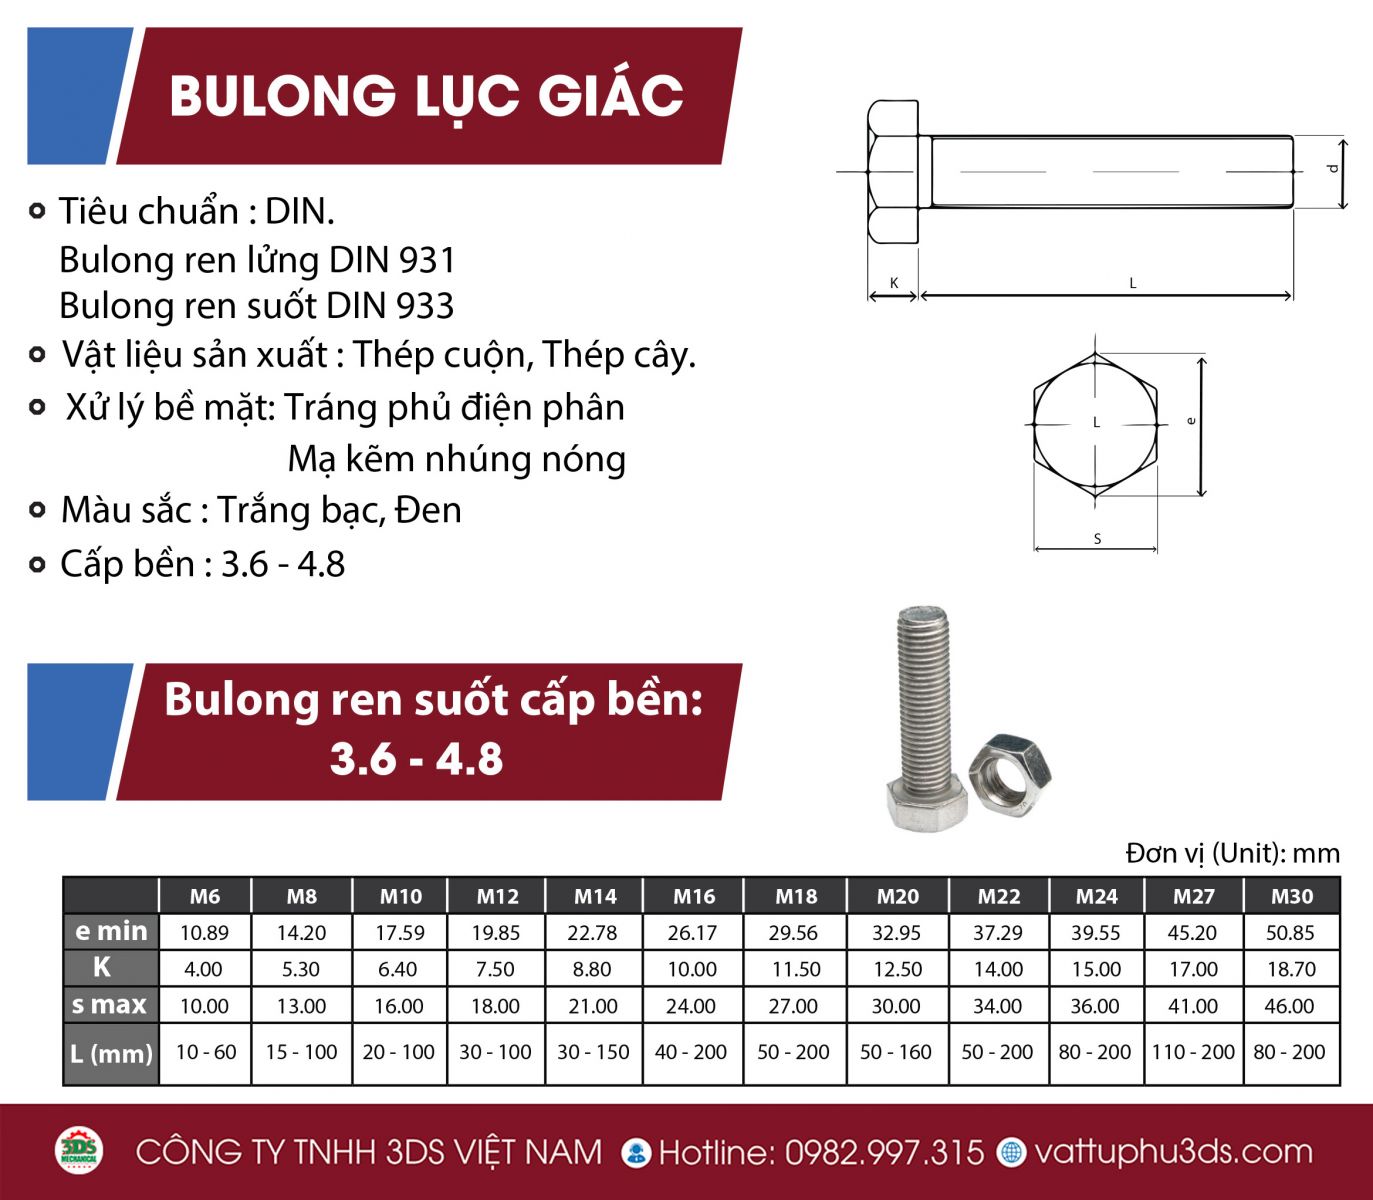 hình ảnh bảng thông số bulong